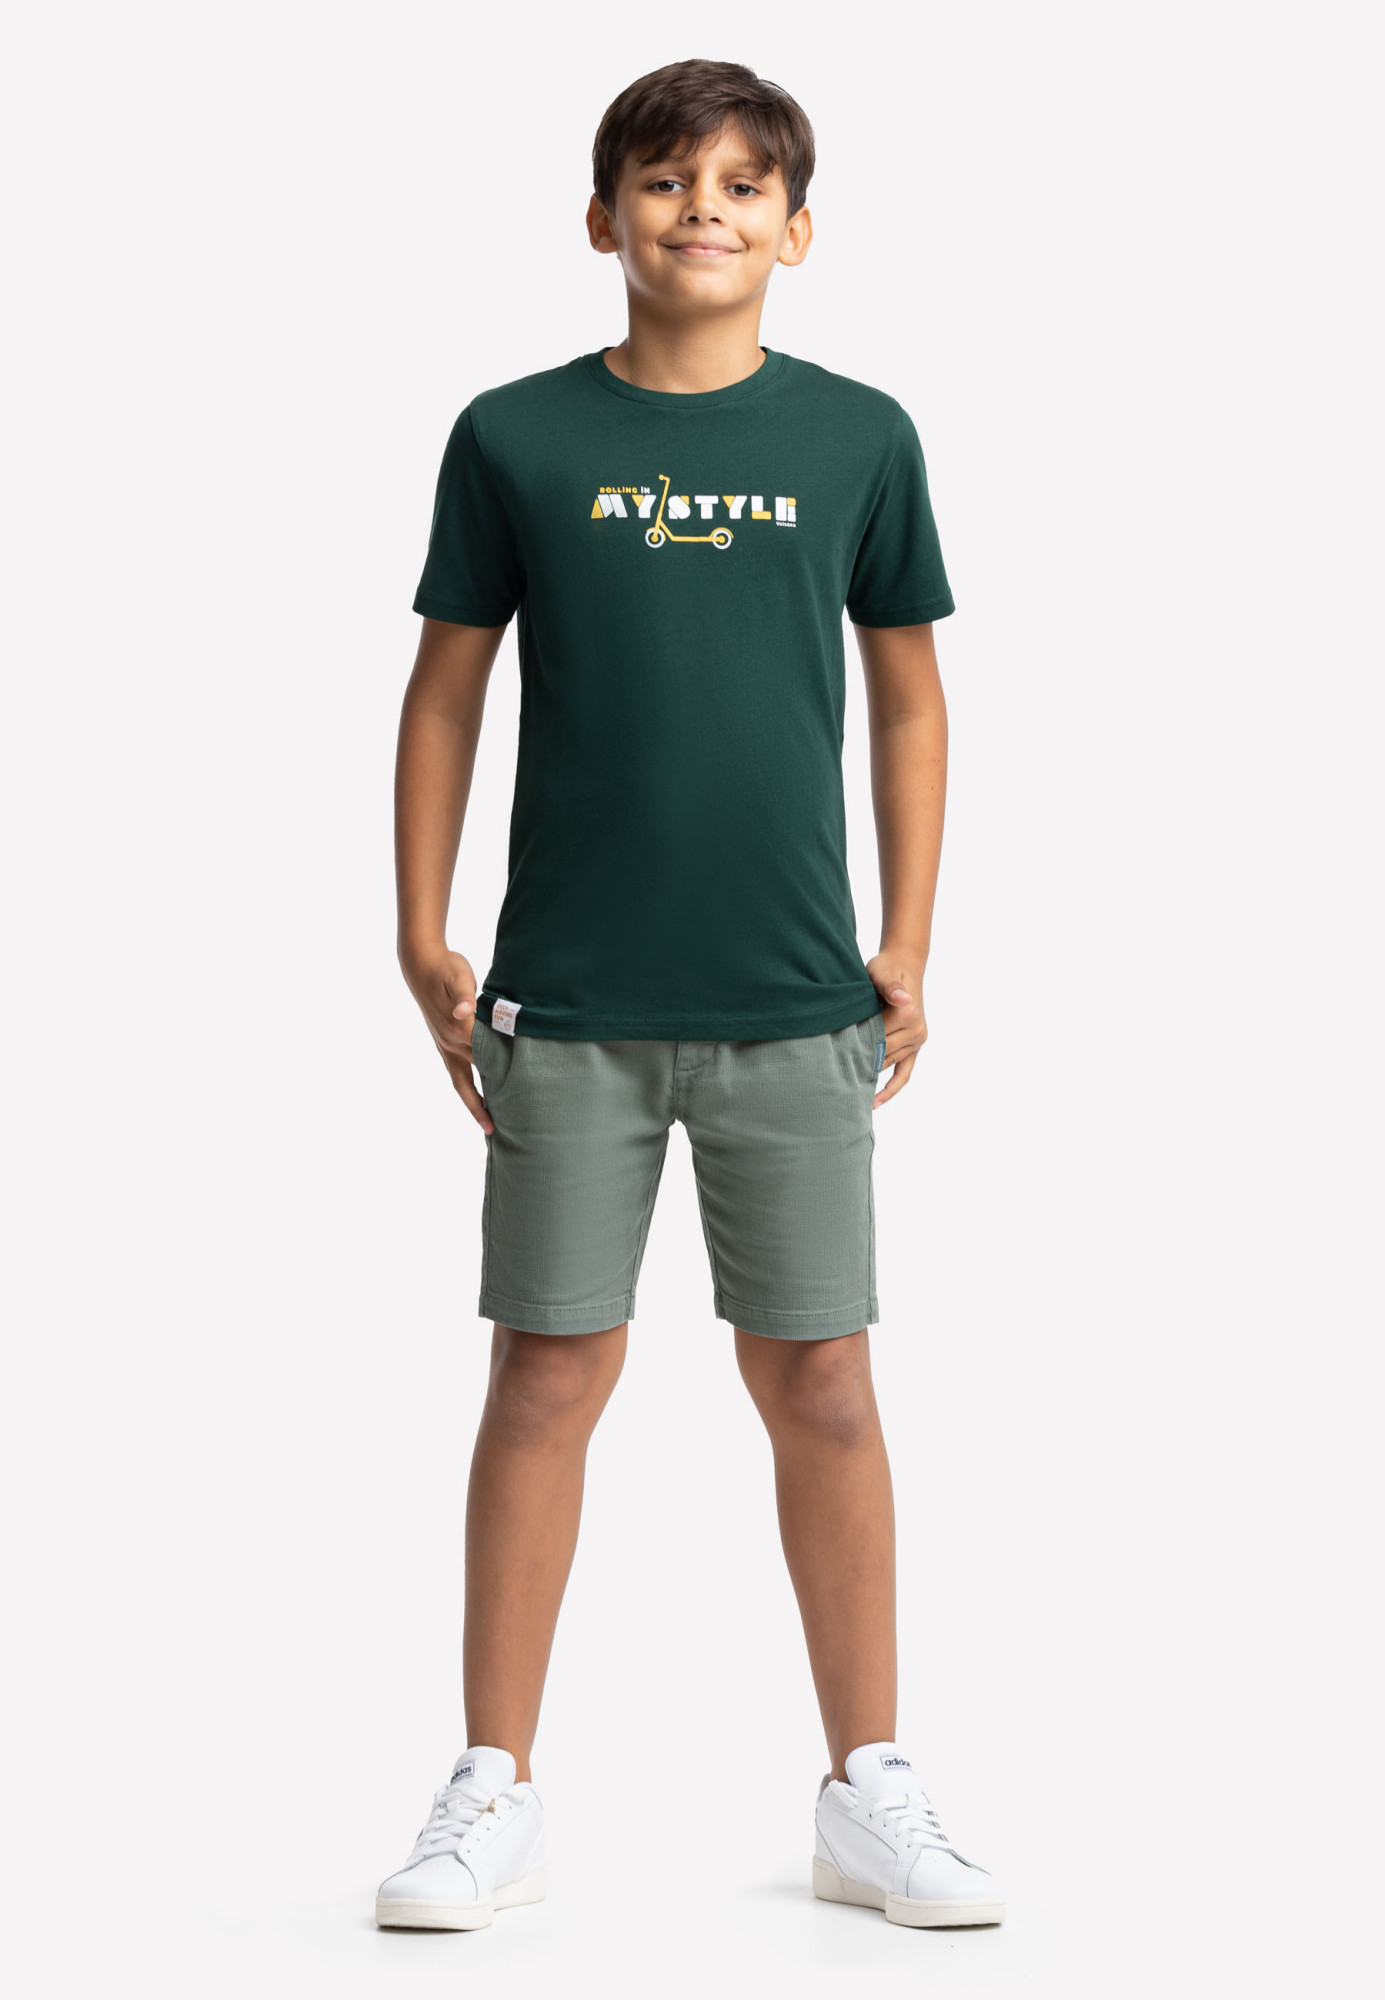 Volcano Regular T-Shirt T-Scooter Junior B02417-S22 Green Dark 134/140